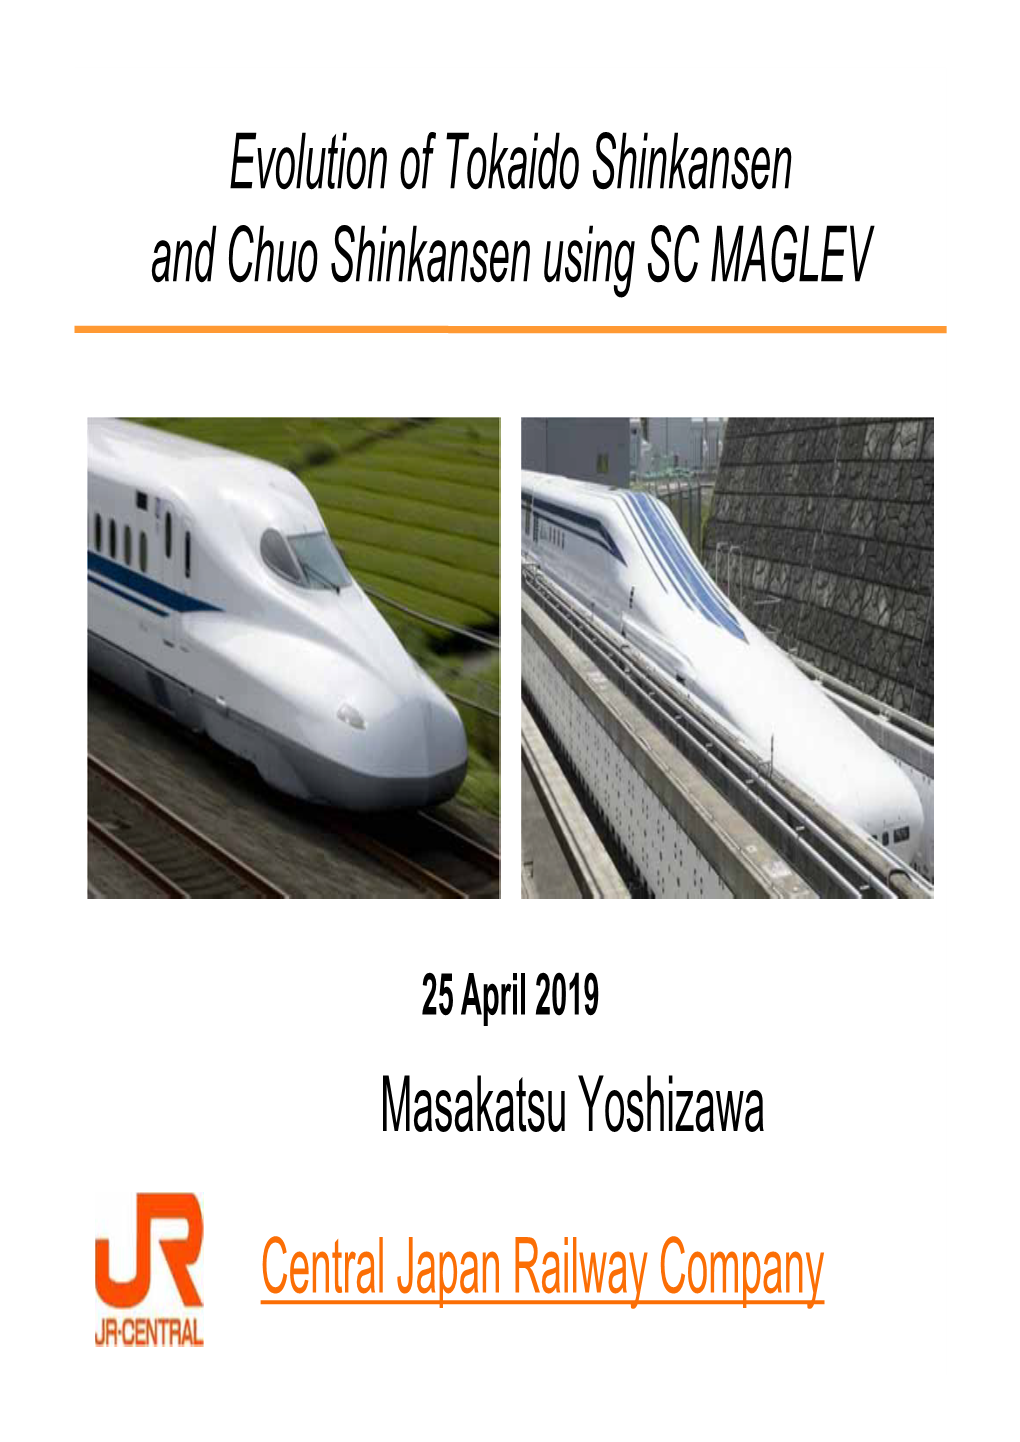 Evolution of Tokaido Shinkansen and Chuo Shinkansen Using SC MAGLEV